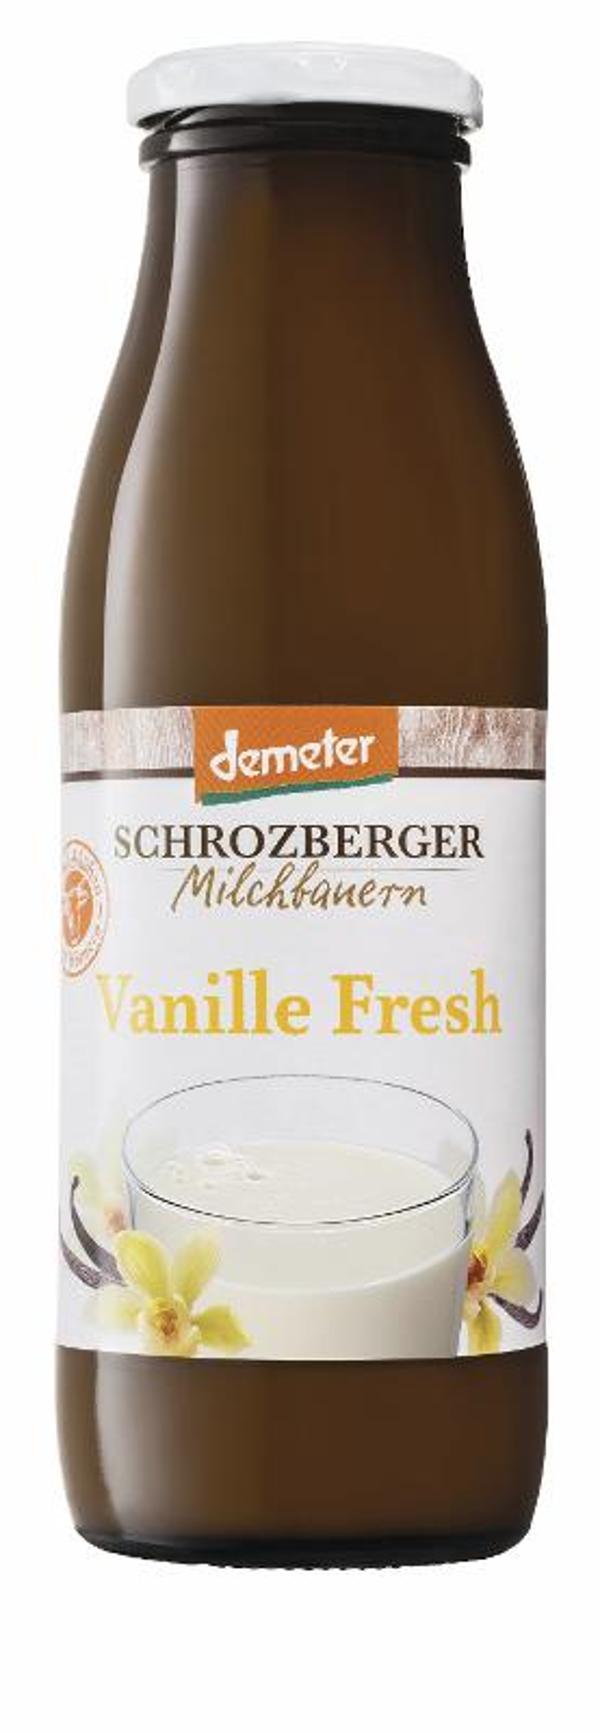 Produktfoto zu Vanilla fresh, Sauermilch  500g